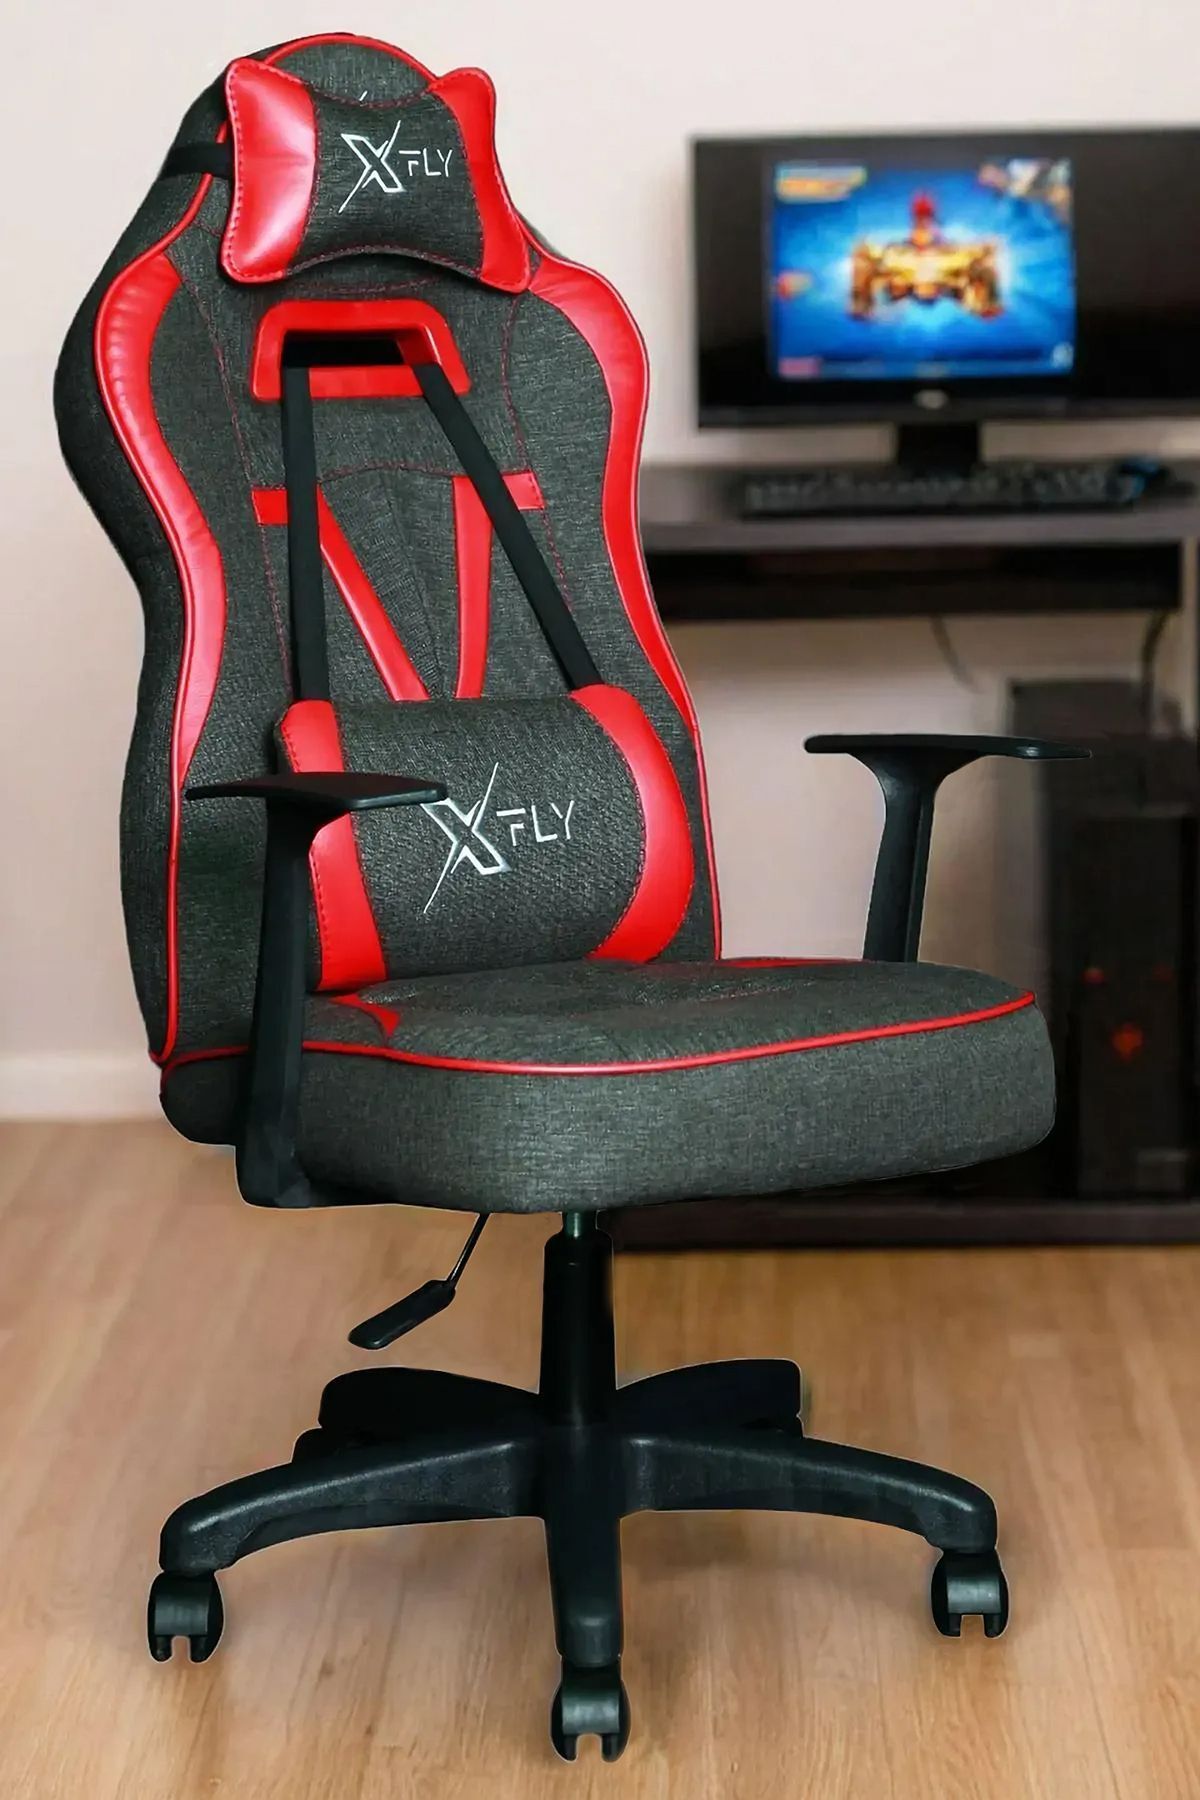 XFLY Oyuncu Koltukları XFLY Vendetta Oyuncu Koltuğu Kırmızı Deri Gri Keten Kumaş Sabit Mekanizmalı Sandalye - 1509B0511